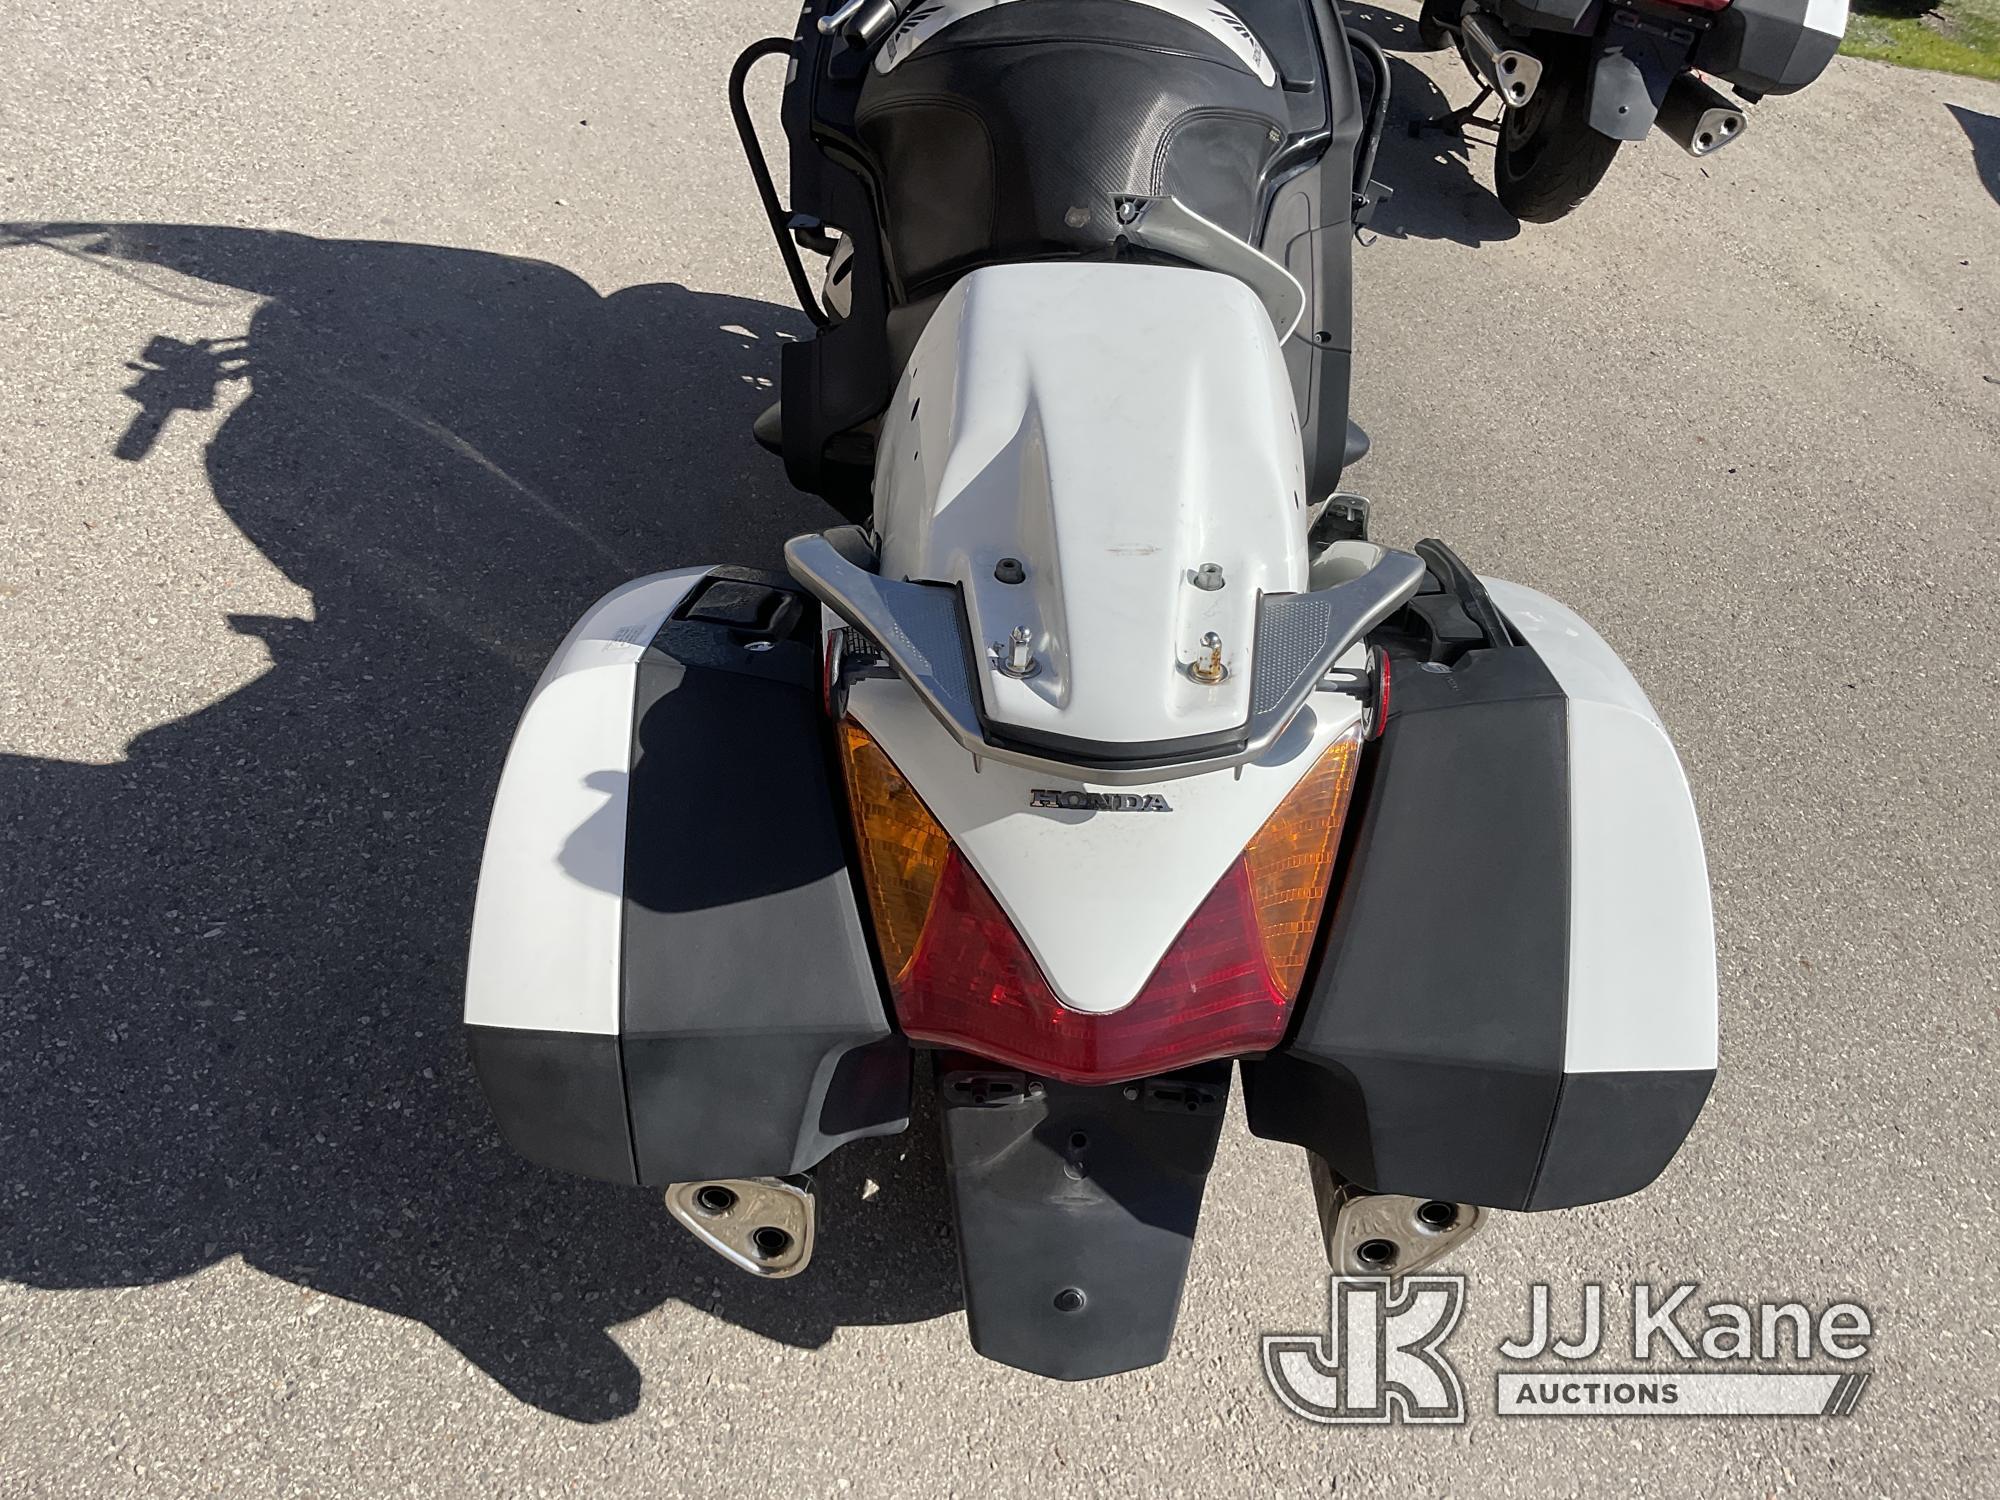 (Jurupa Valley, CA) 2014 Honda ST1300PA Motorcycle Runs, Dead Battery